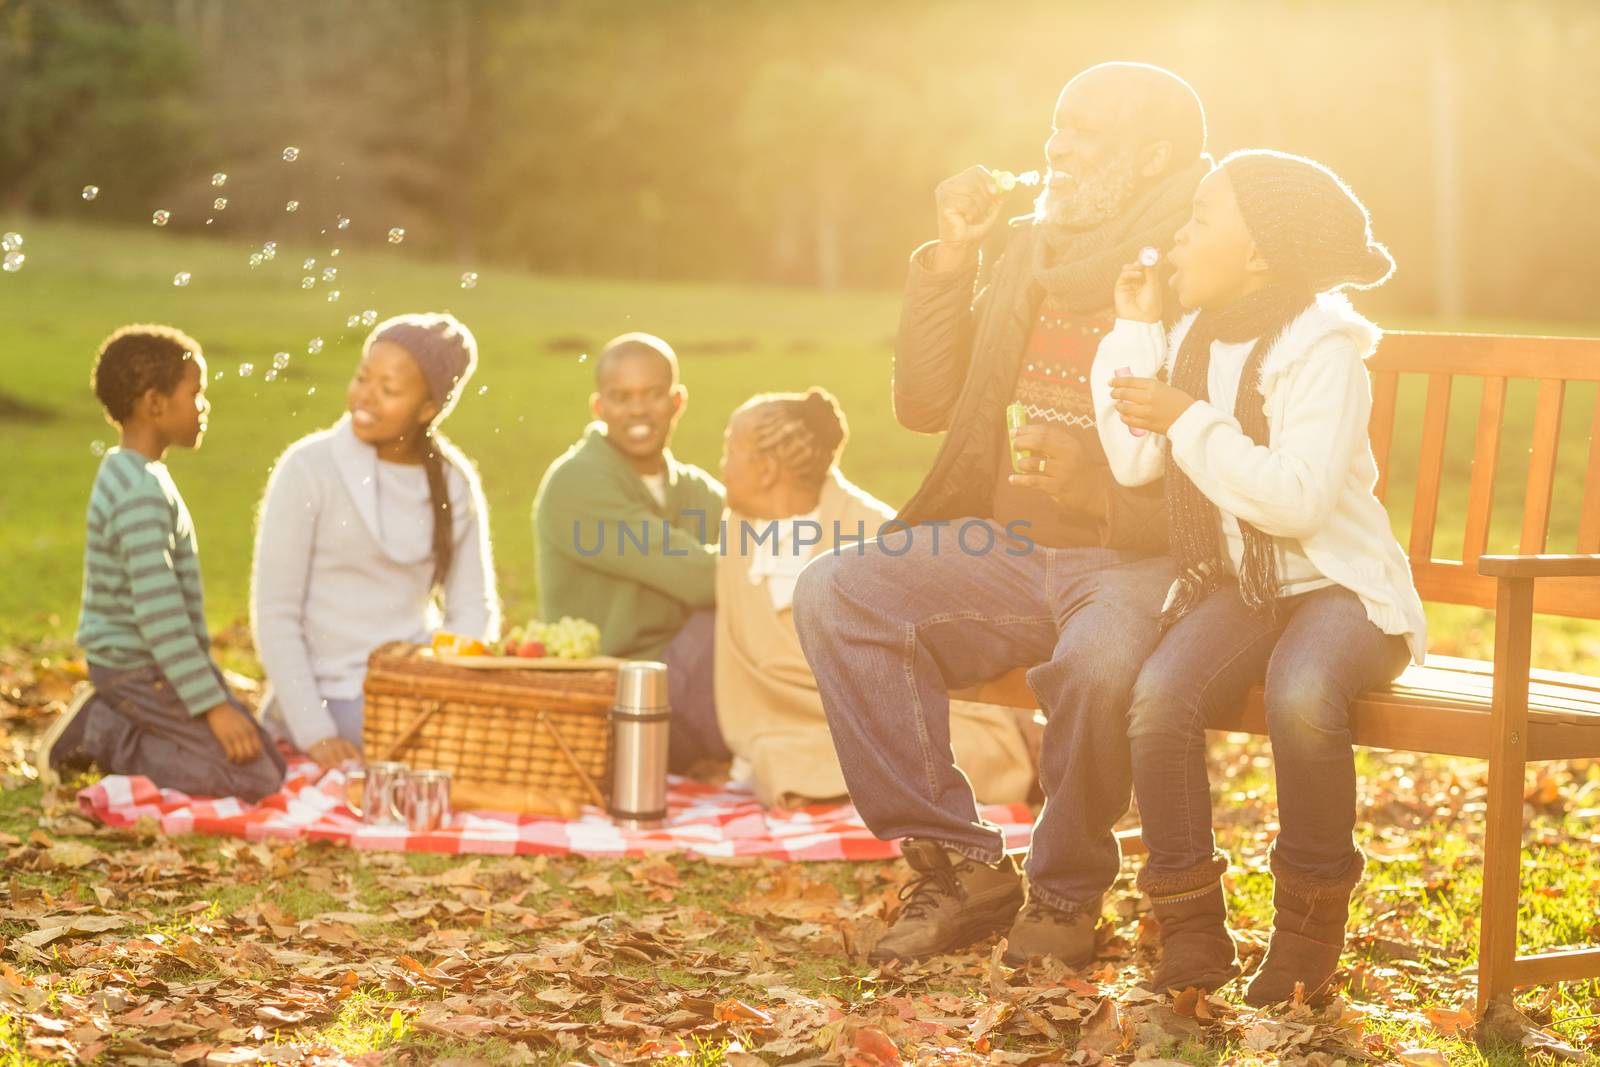 Happy family having a picnic by Wavebreakmedia